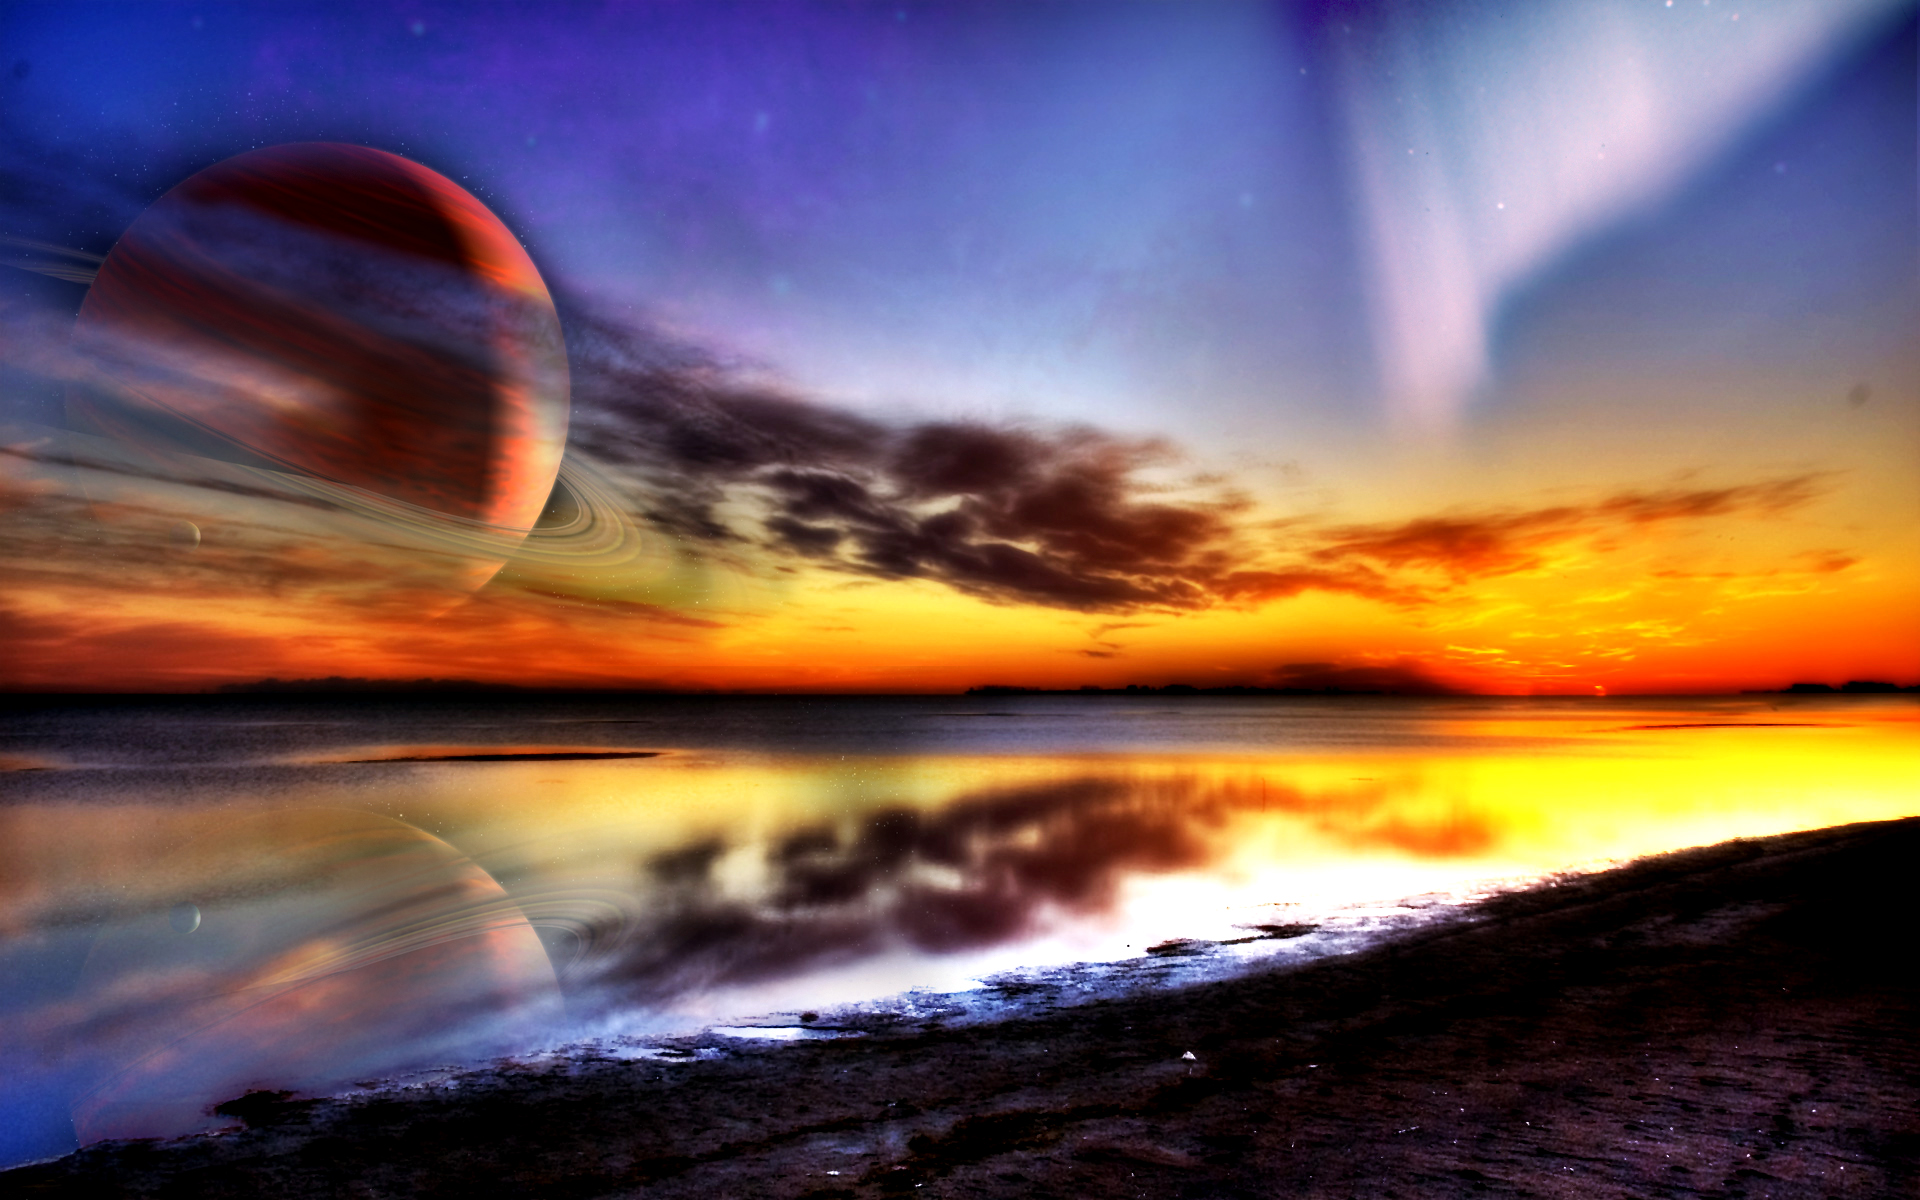 Dream Sunset by Rampageman2 on DeviantArt